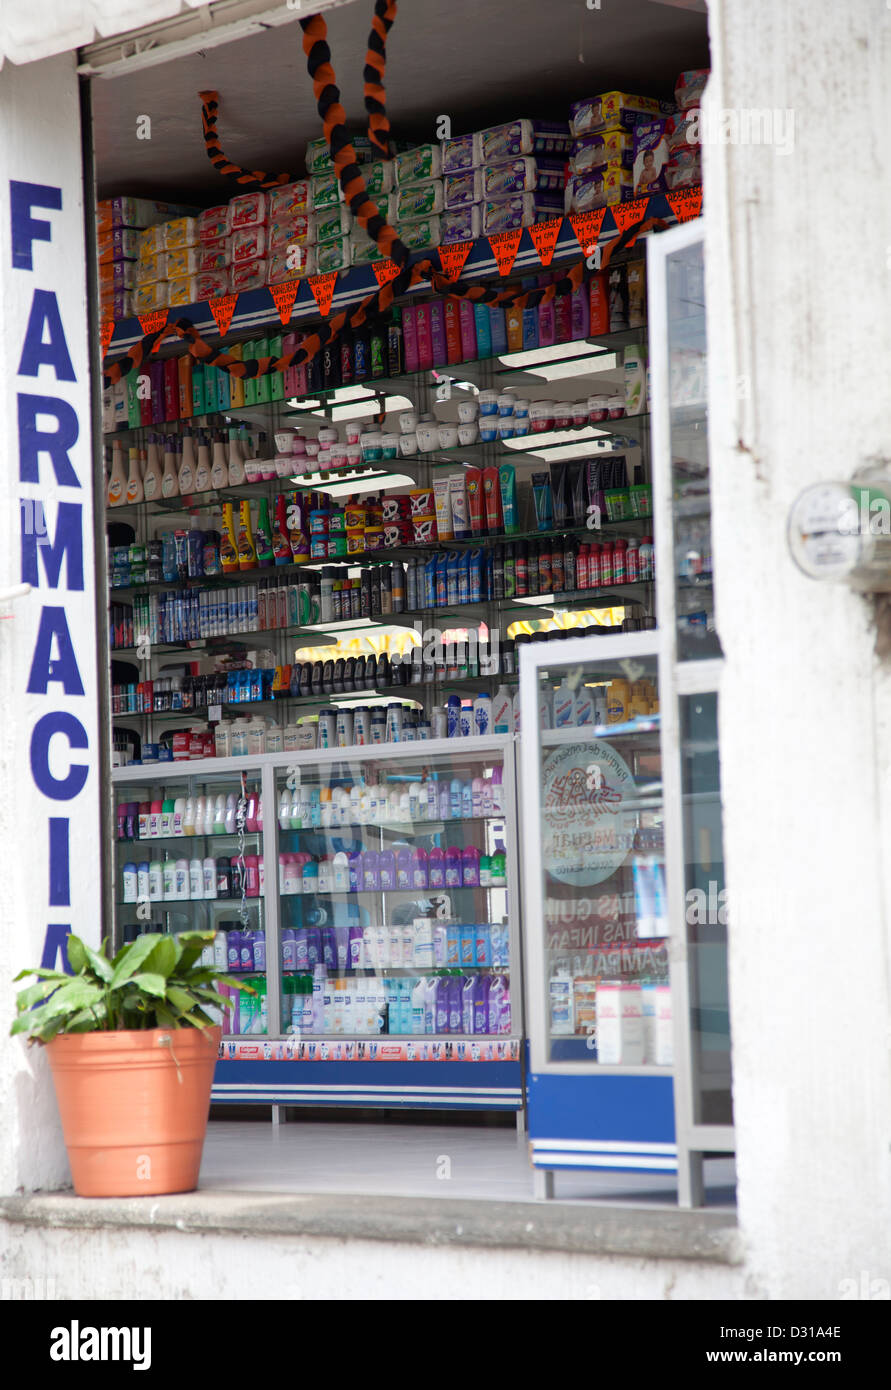 Farmacia Store with Toiletries on Shelves in Oaxaca - Mexico Stock Photo